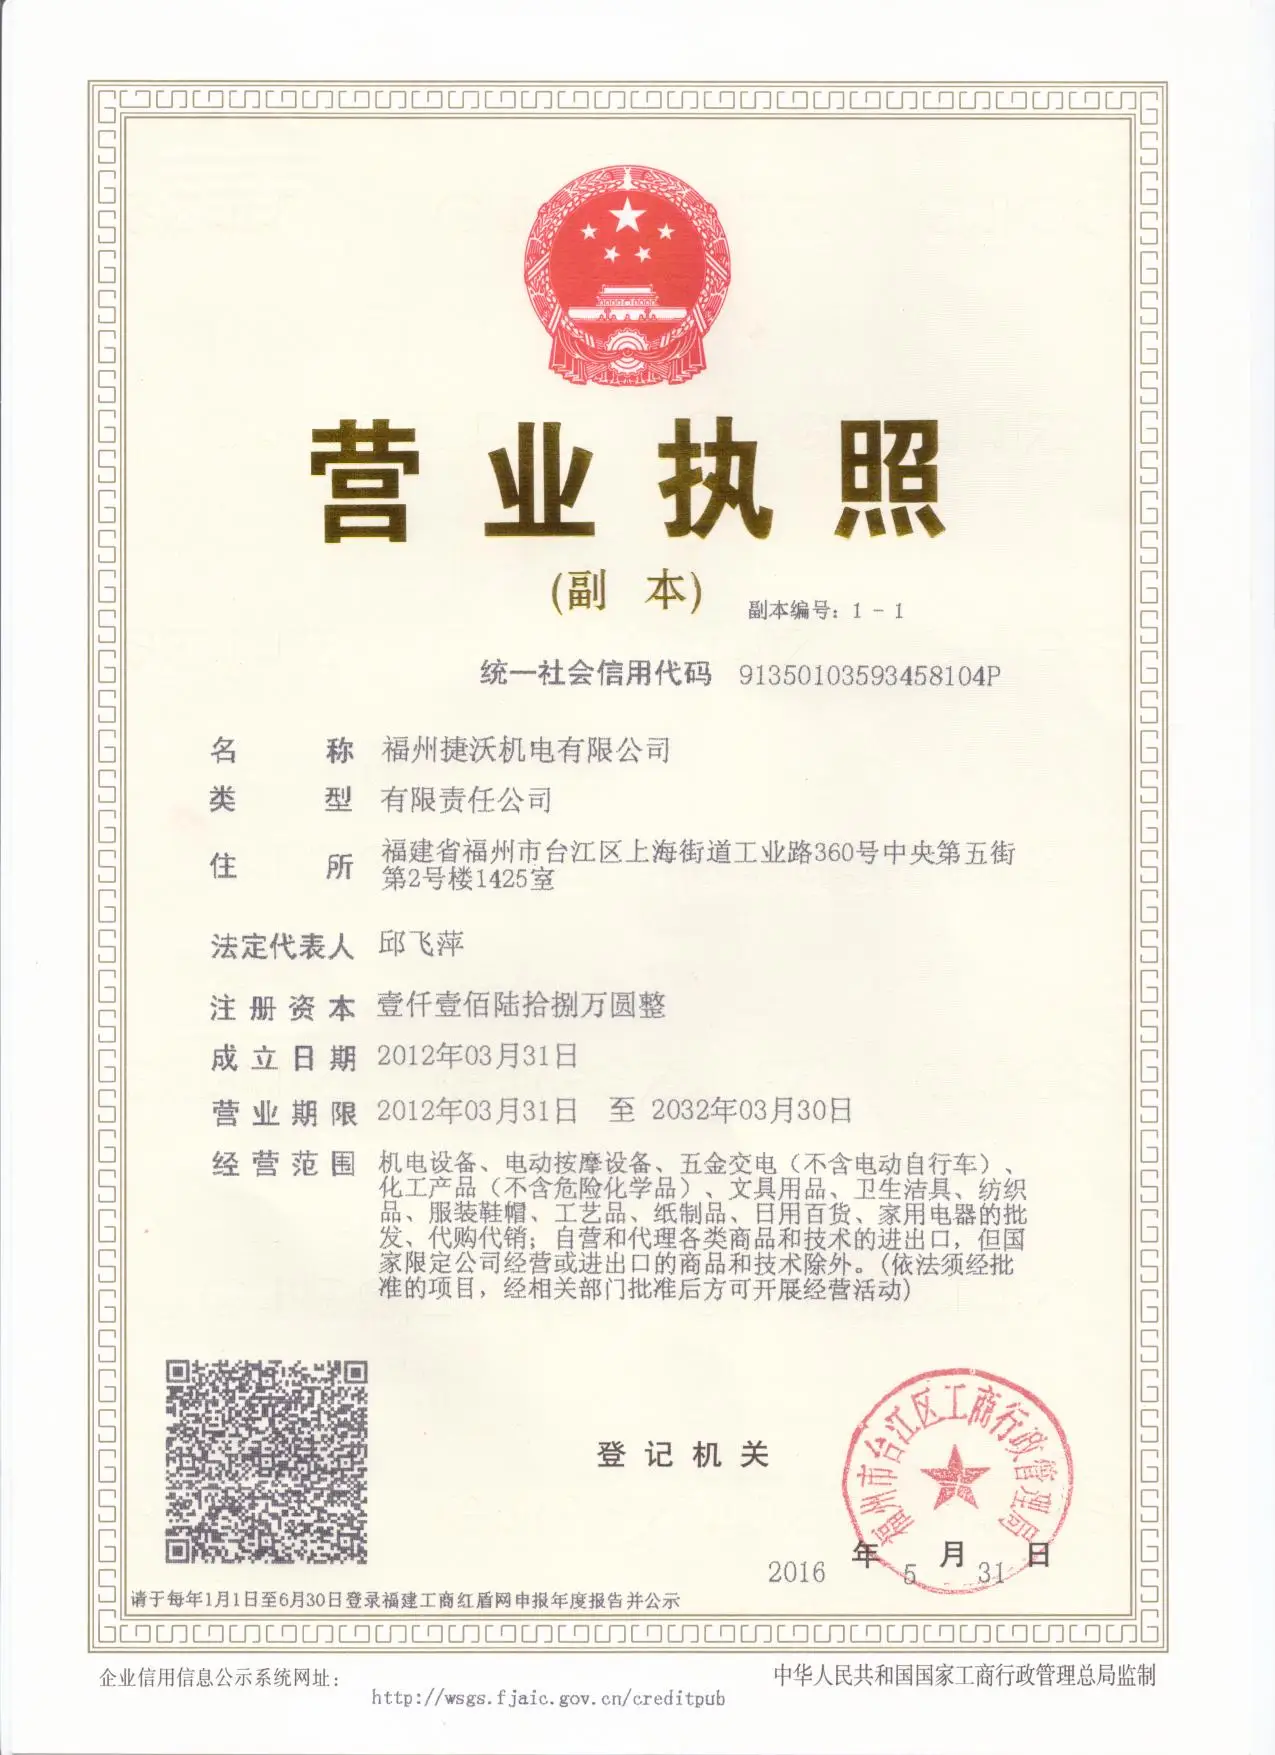 Company Overview - Fuzhou Jet Electric Machinery Co., Ltd.